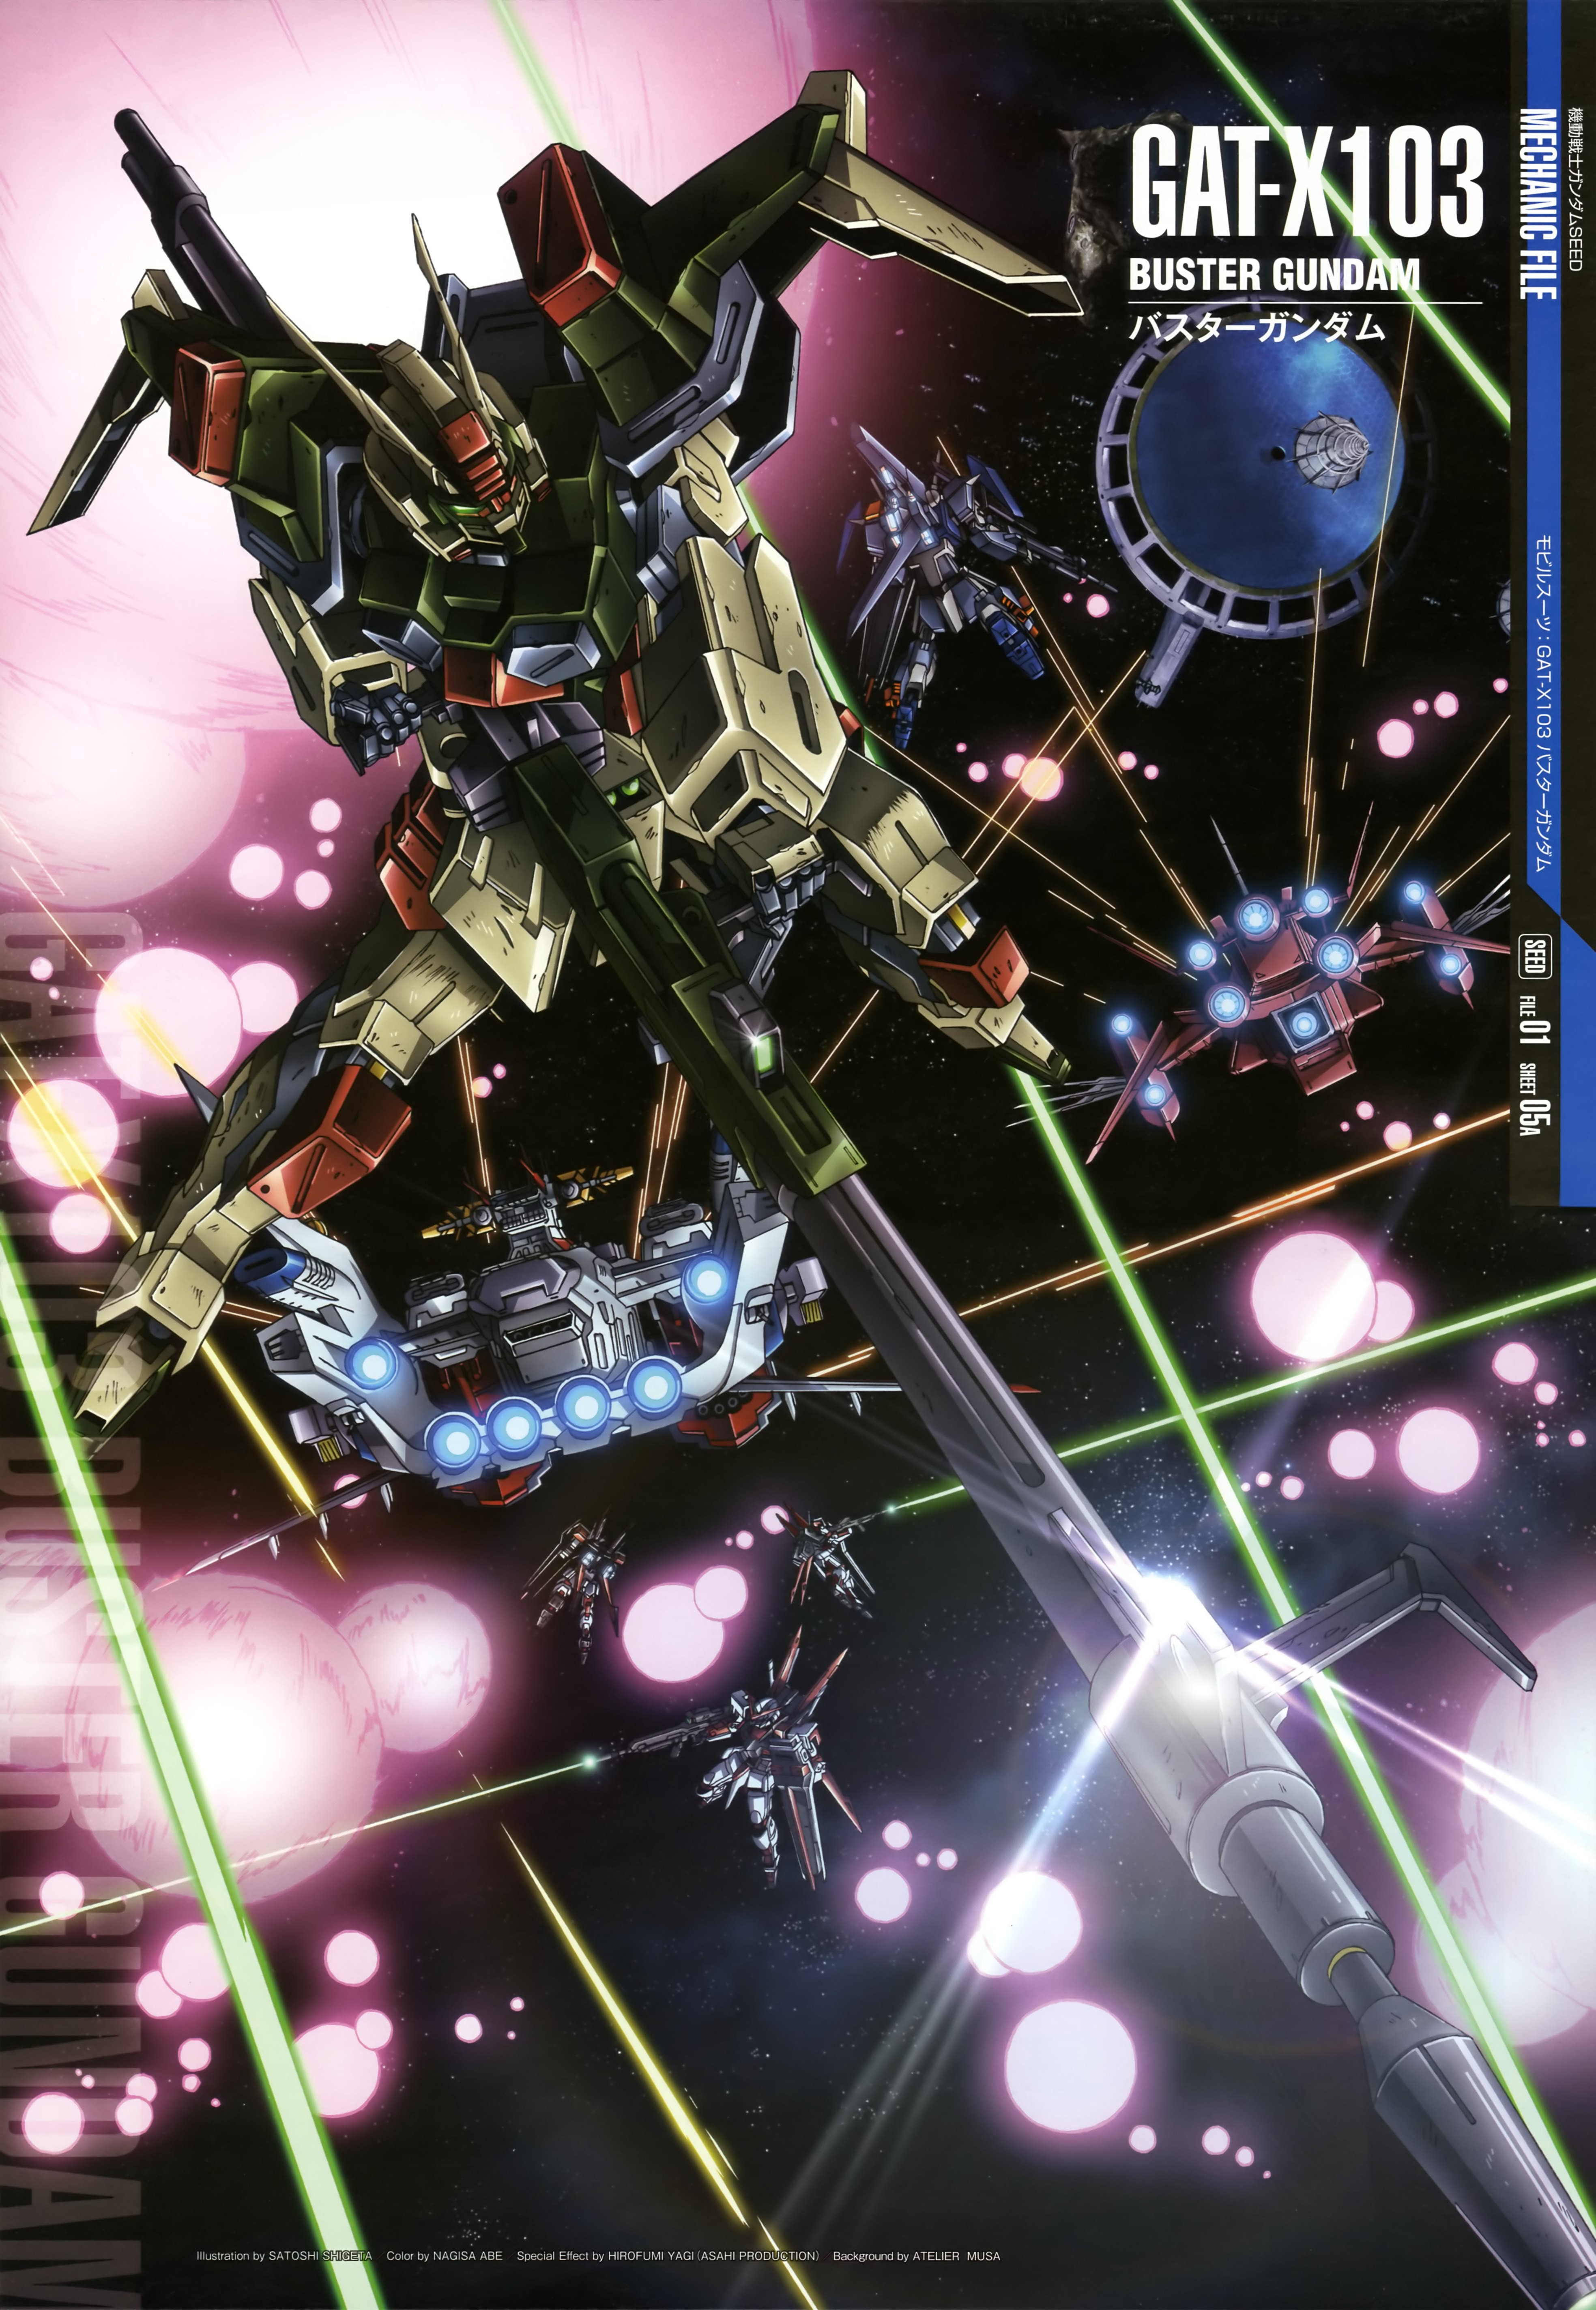 Buster Gundam Anime Mechs Gundam Mobile Suit Gundam SEED Super Robot Taisen Artwork Digital Art Duel 3935x5696